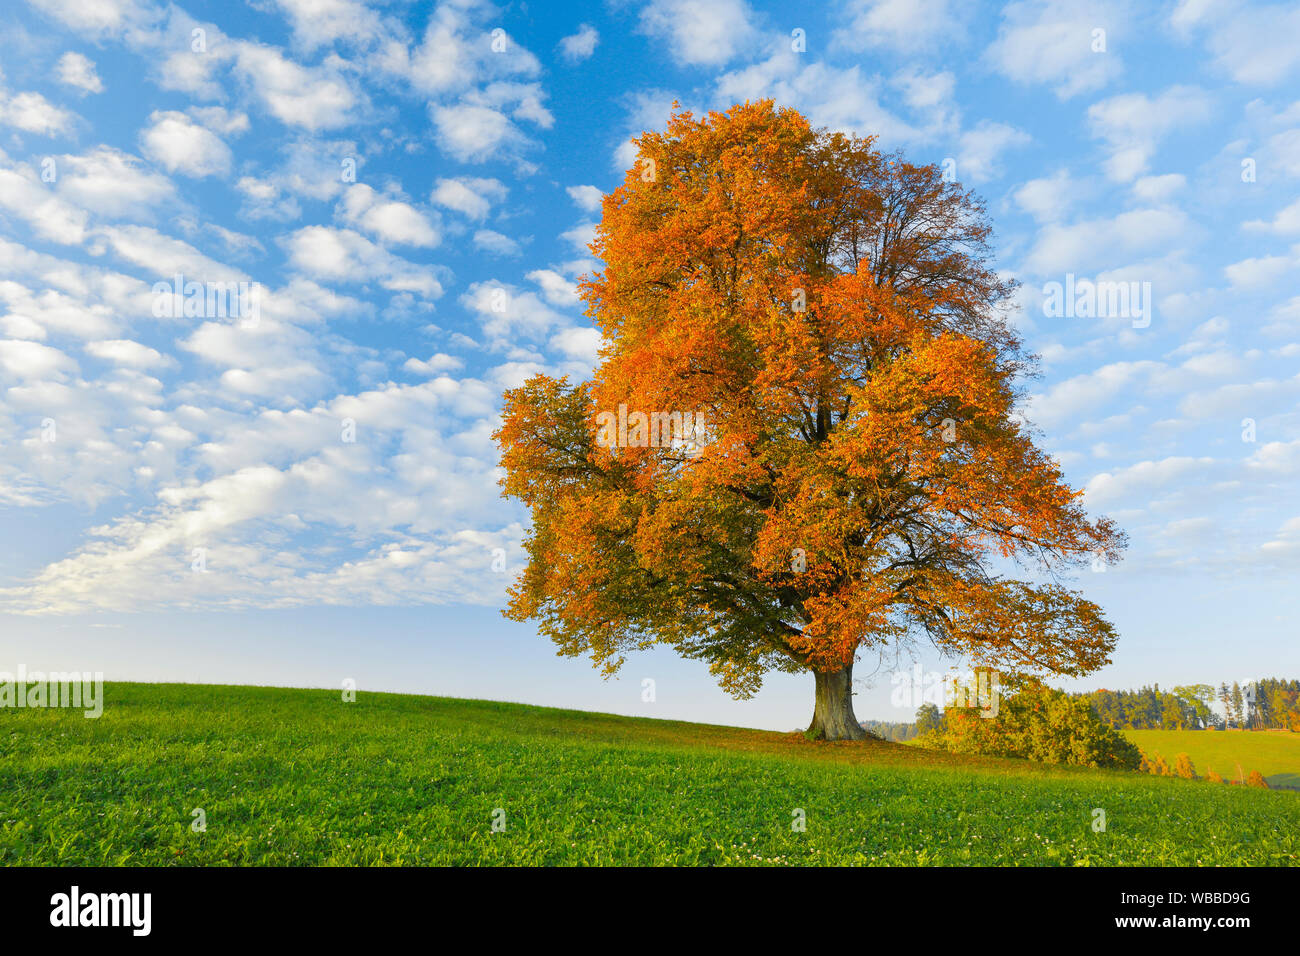 Linden (Tilia sp.). Single tree in autumn. Switzerland Stock Photo